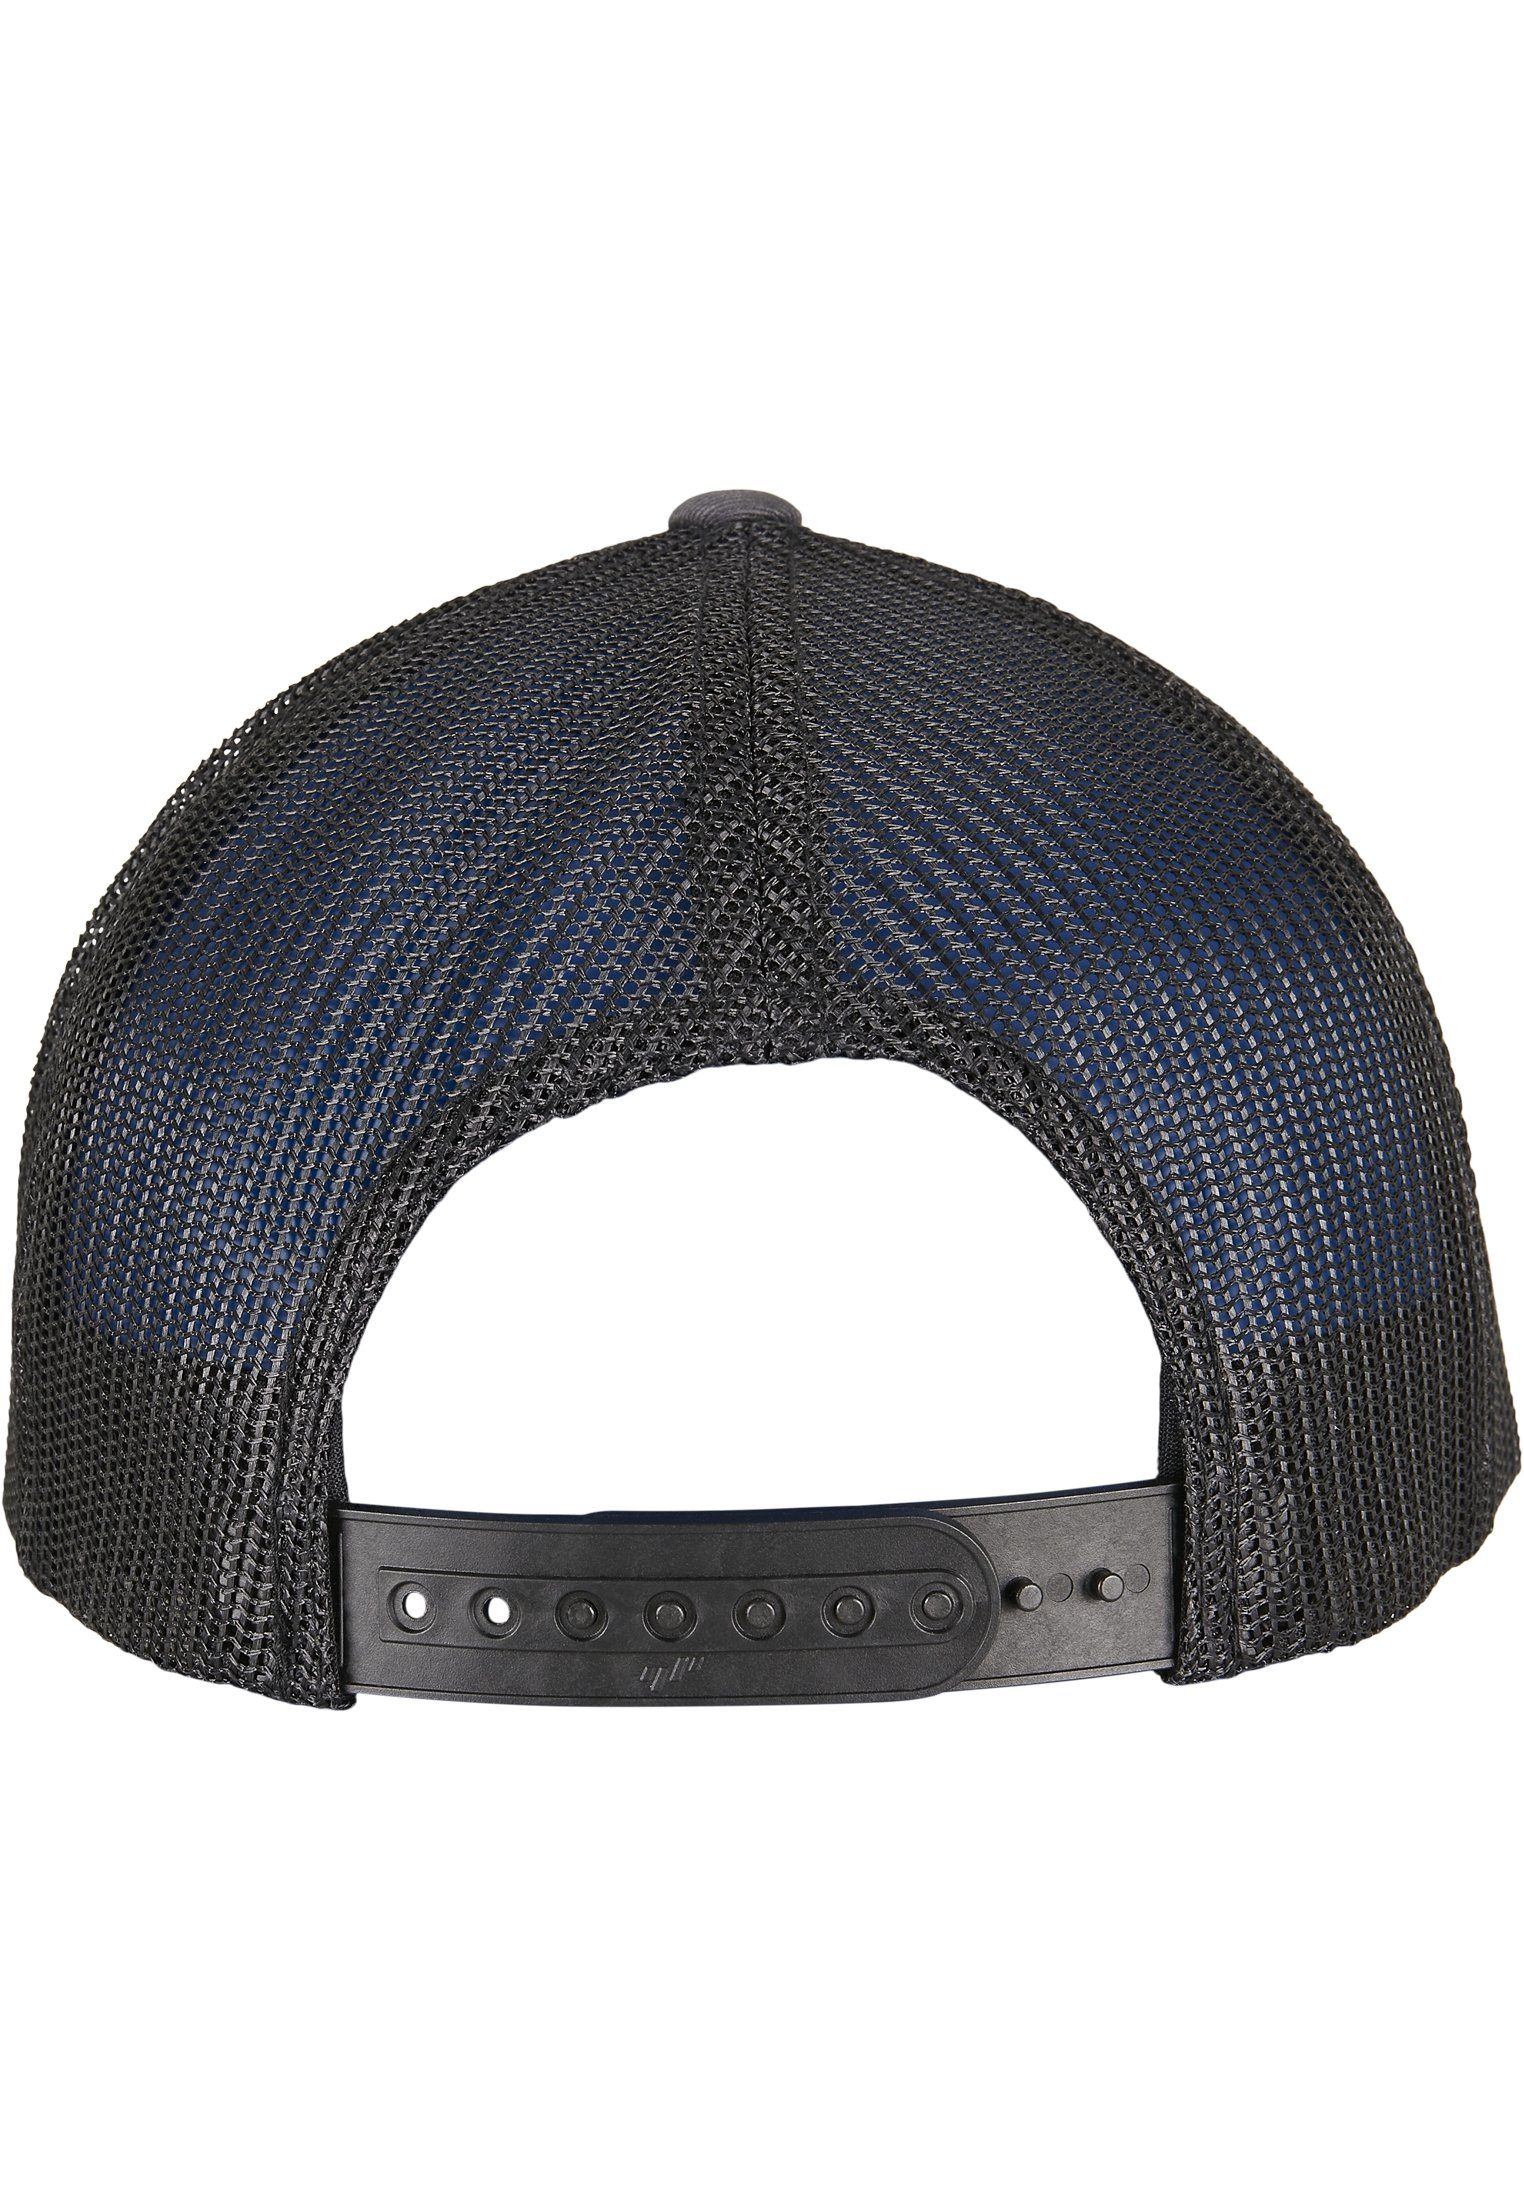 CLASSICS Caps charcoal/black RECYCLED Flex TRUCKER YP CAP Flexfit 2-TONE Cap RETRO